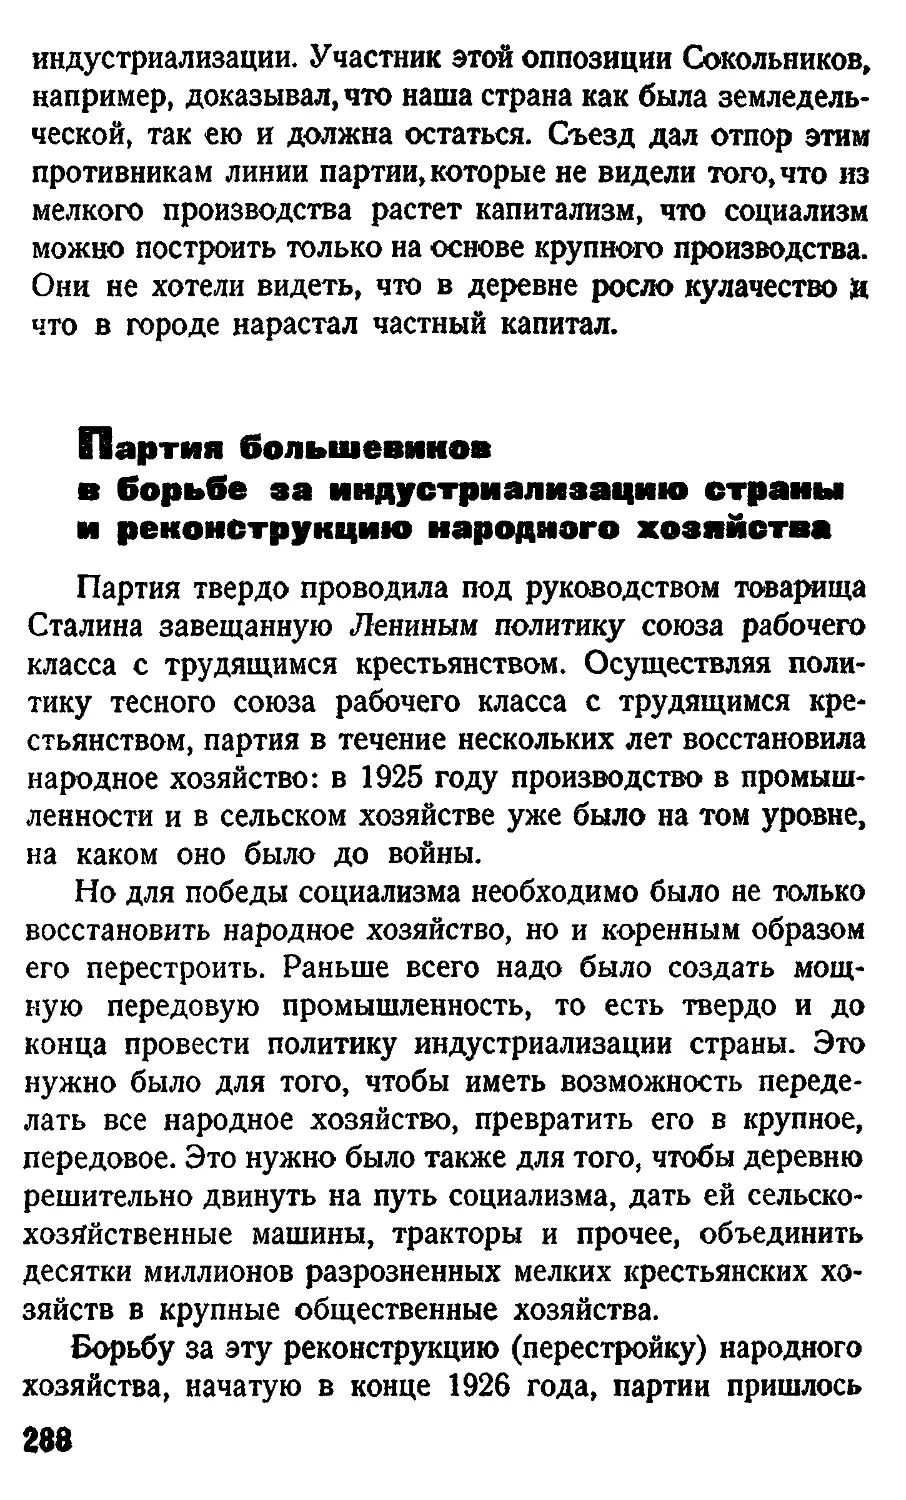 Партия большевиков в борьбе за индустриализацию страны и реконструкцию народного хозяйства